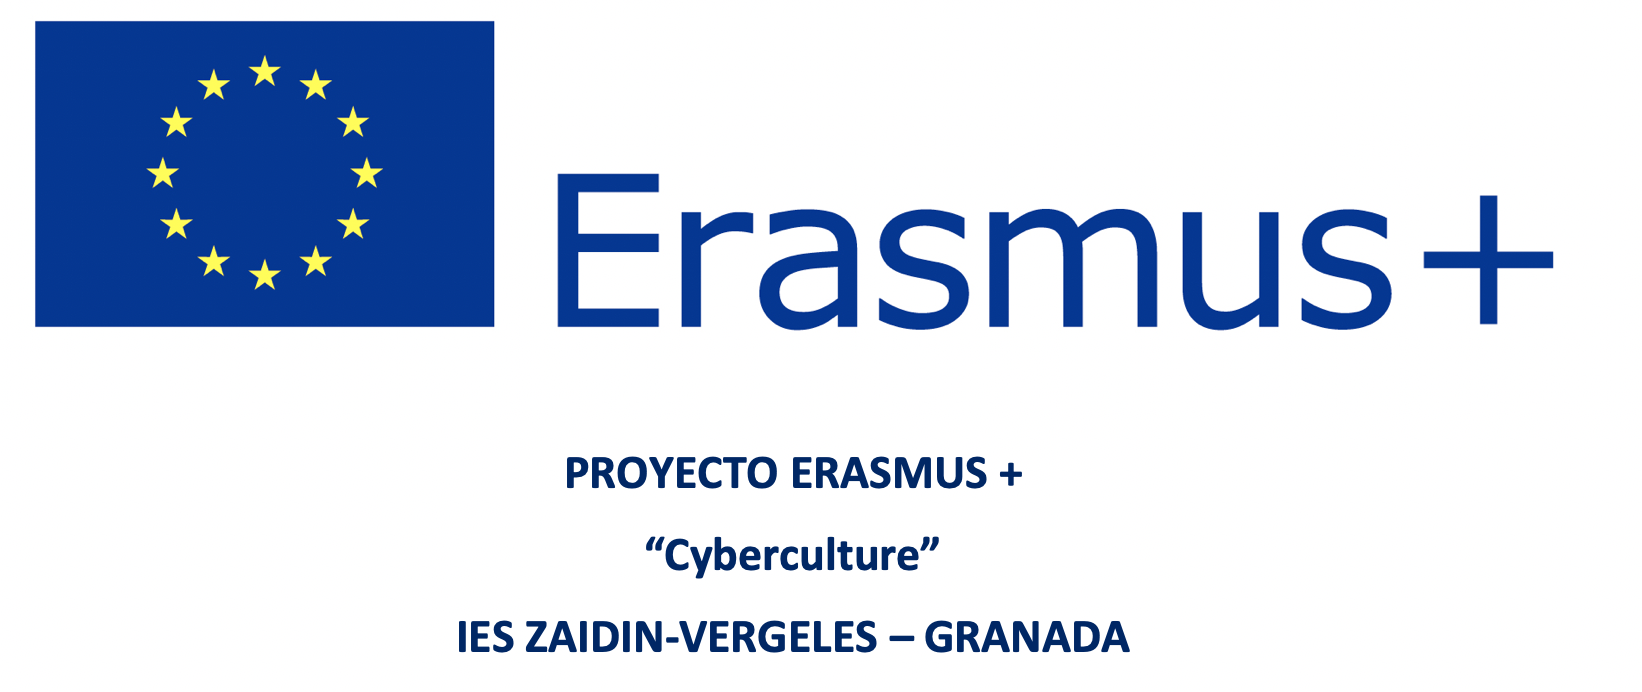 Erasmus+ Cyberculture: Movilidad Virtual GRANADA